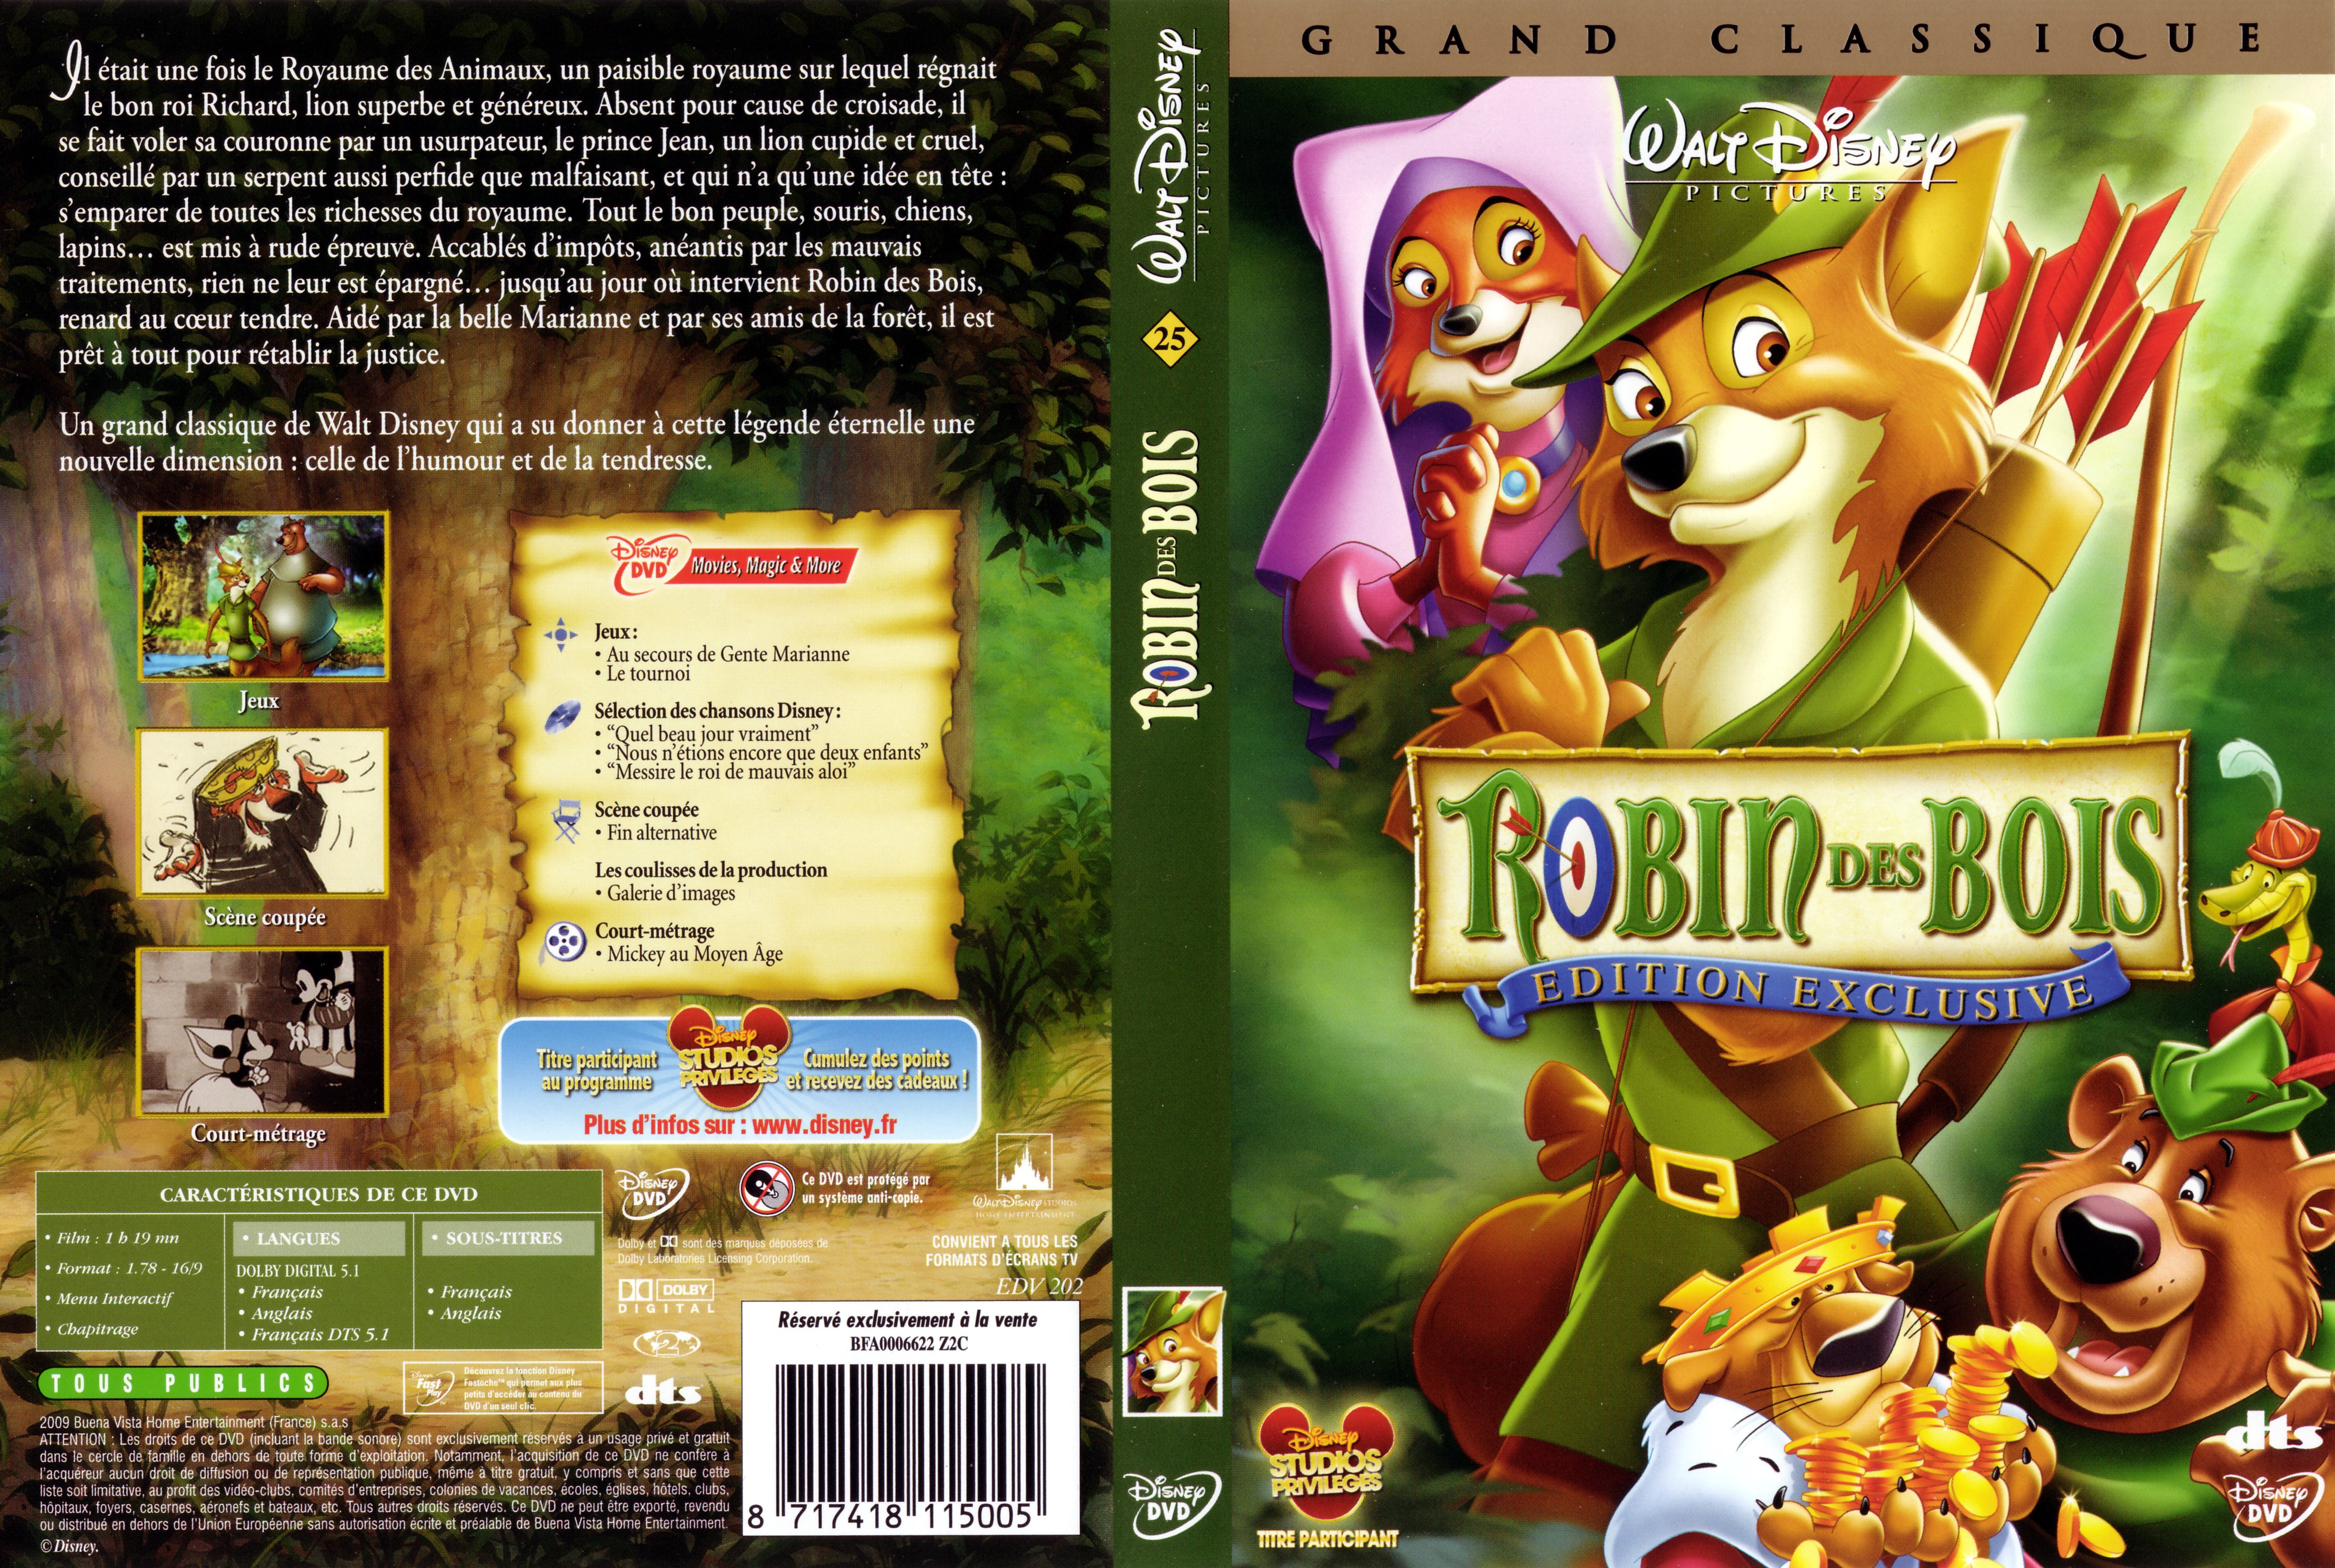 Jaquette DVD Robin des bois v3